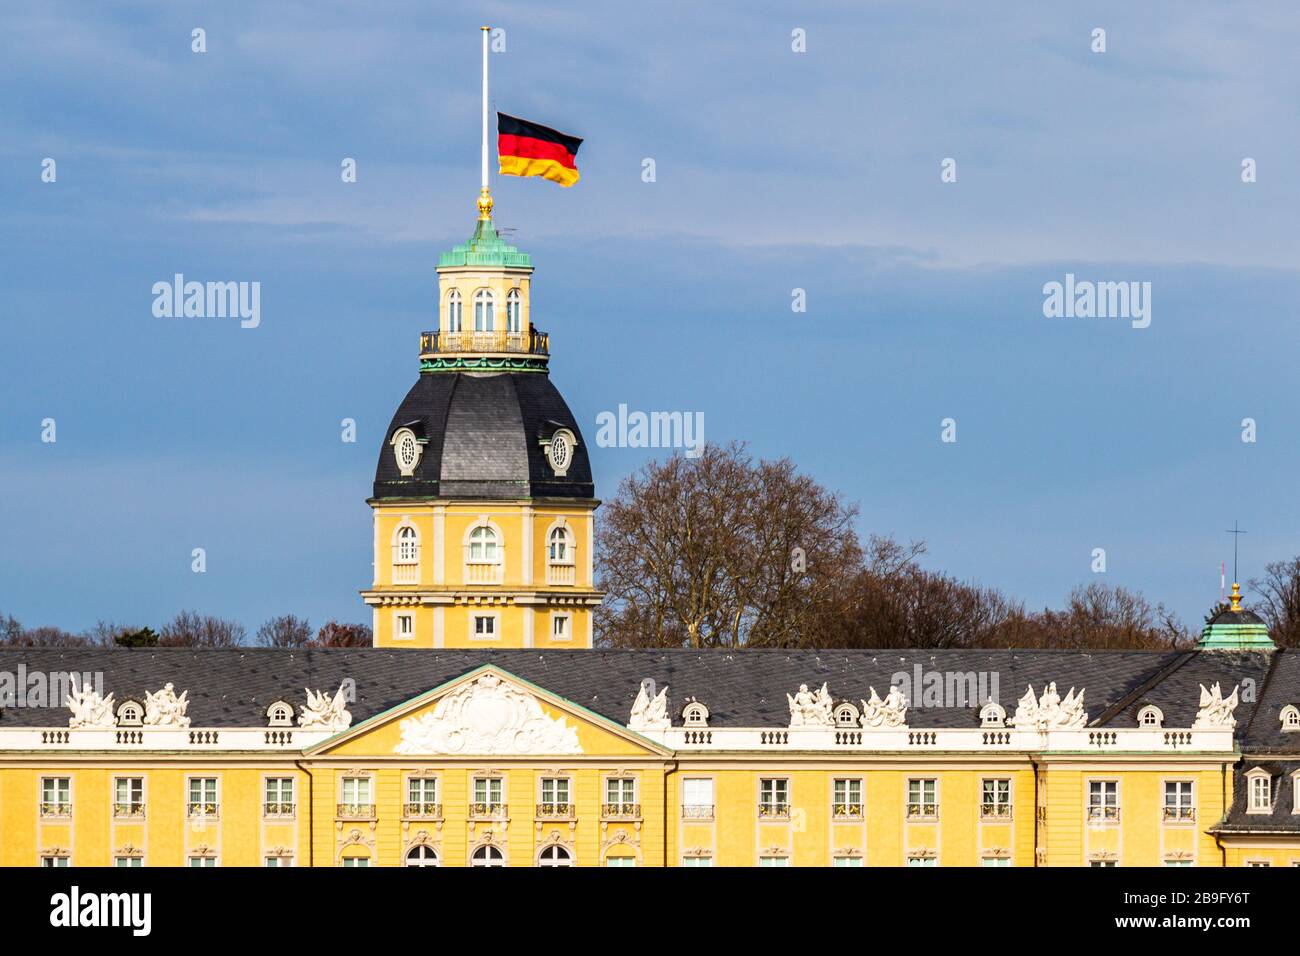 Tetto del Castello di Karlsruhe, con bandiera tedesca a Halfmast, auf Halbmast, sul tetto della torre in inverno. A Baden-Württemberg, Germania Foto Stock